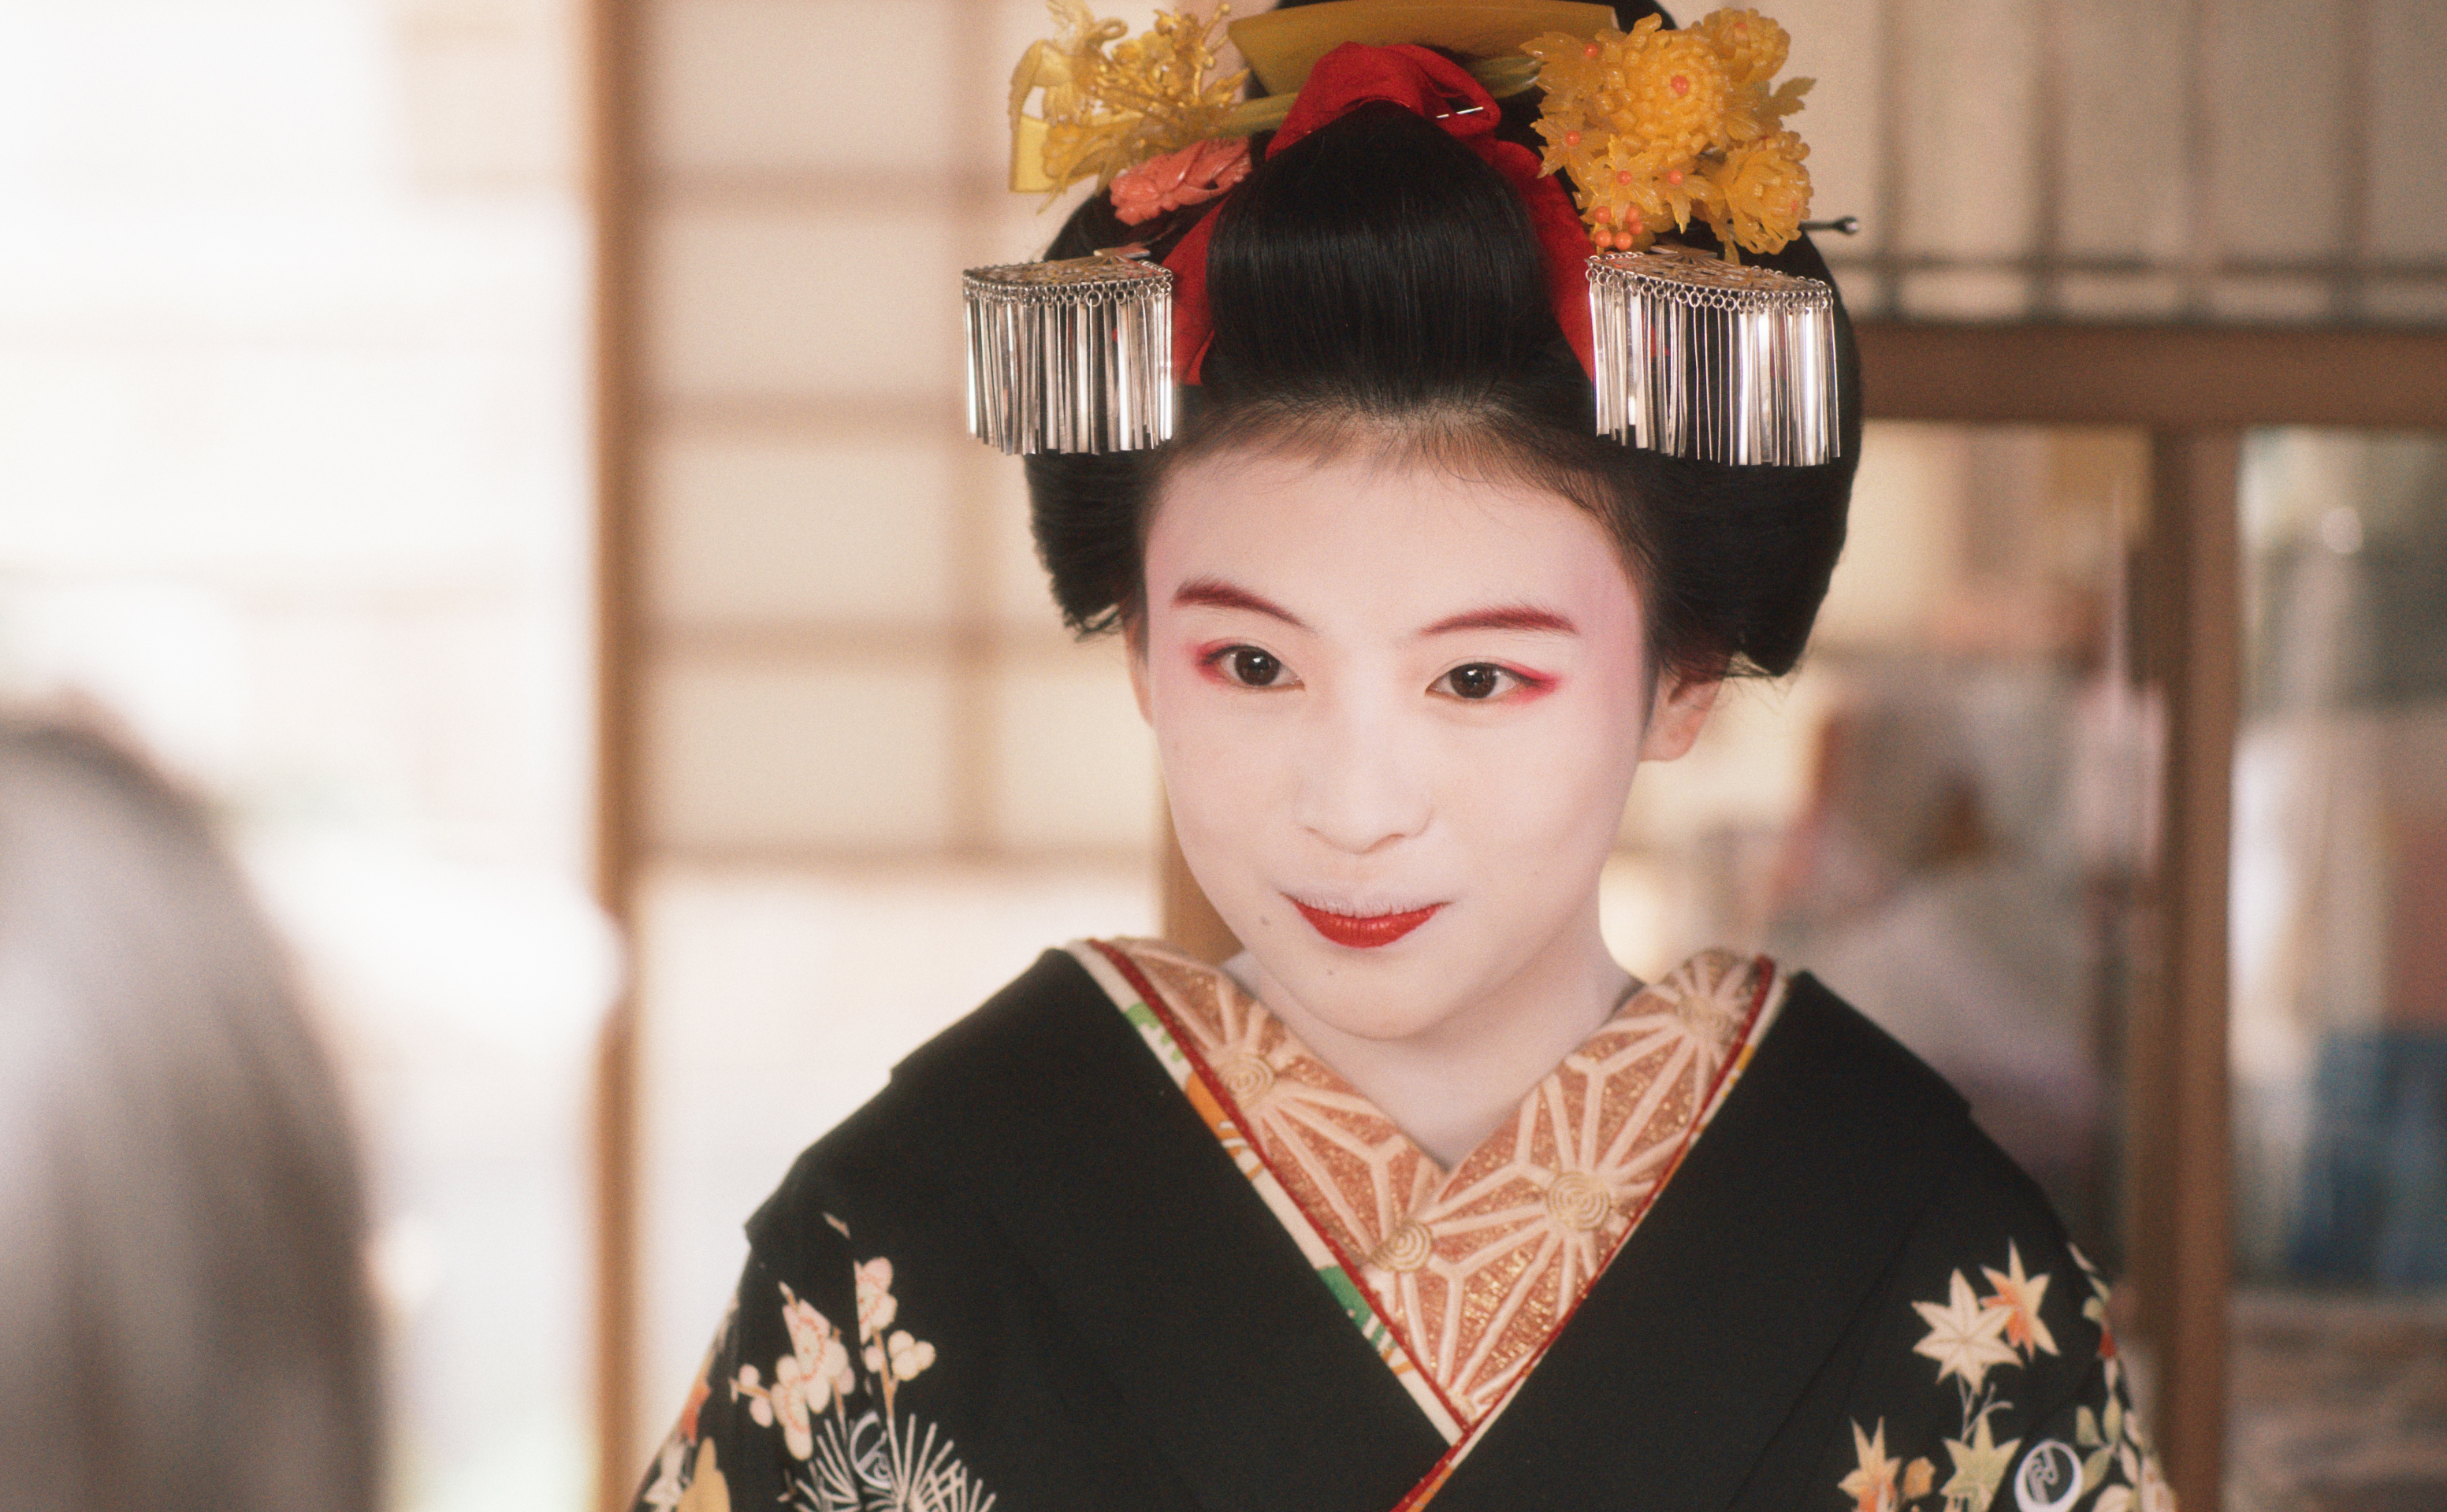 Netflix diffuse une série japonaise dans l'univers du manzai